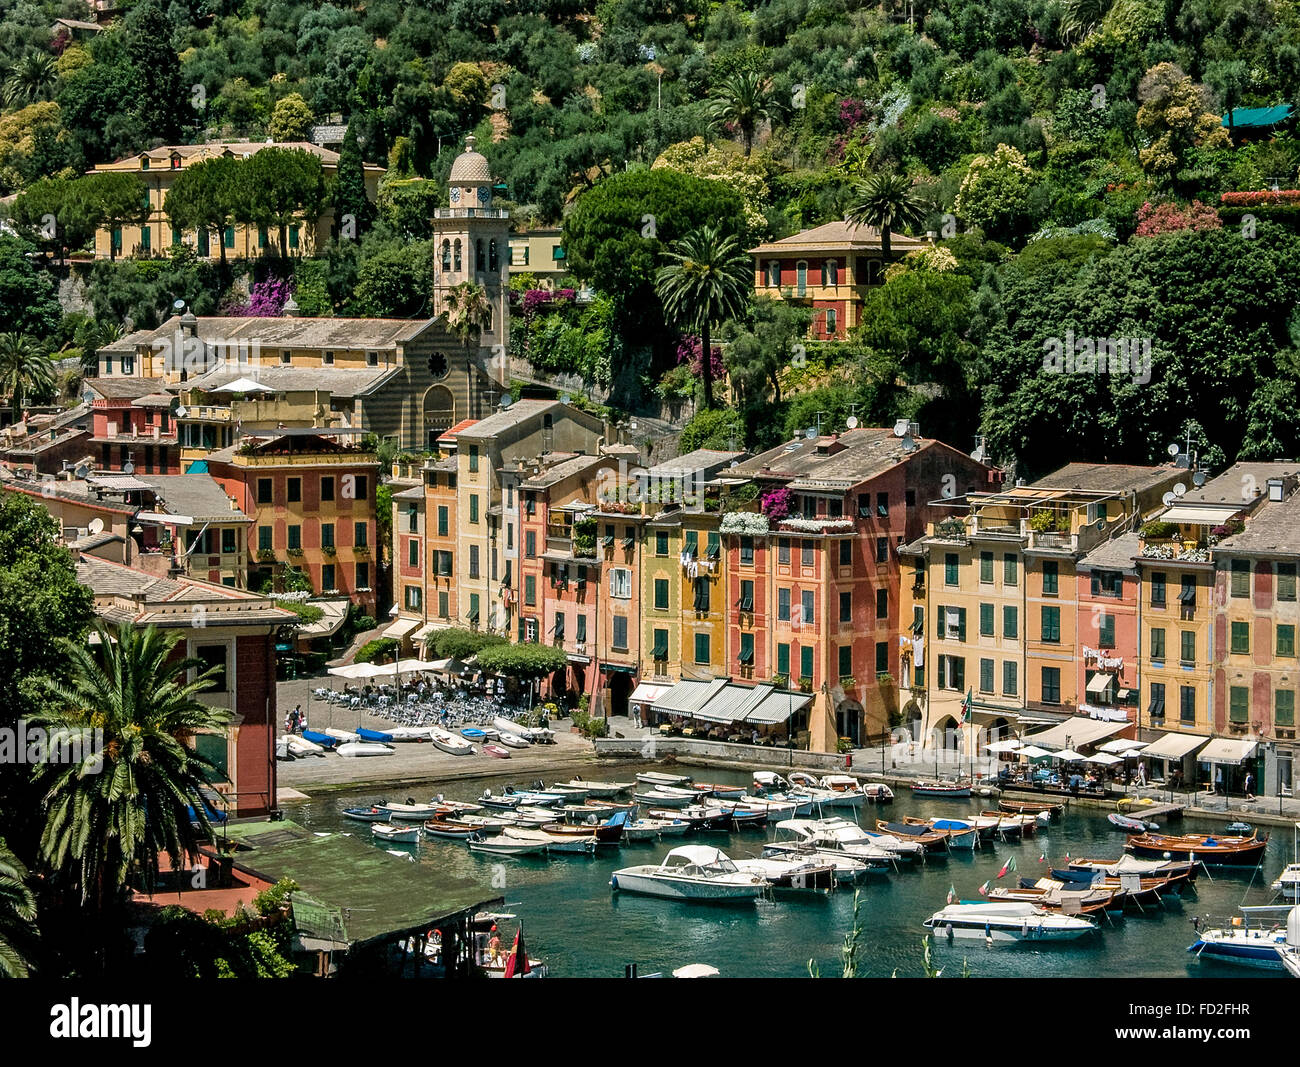 Italy Liguria Portofino view Stock Photo